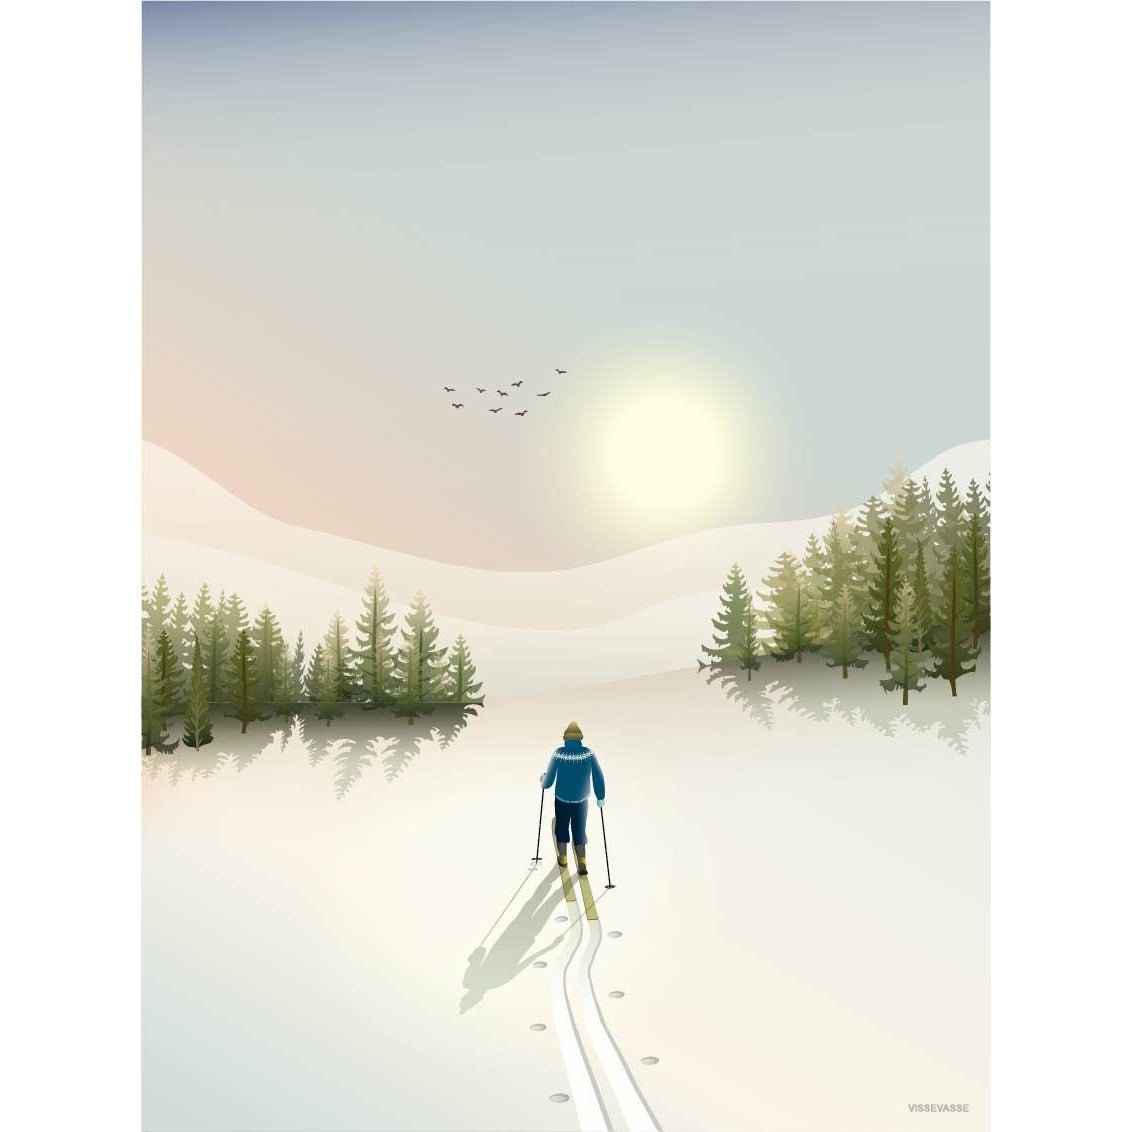 Póster de esquí de cross country Vissevasse, 50x70 cm